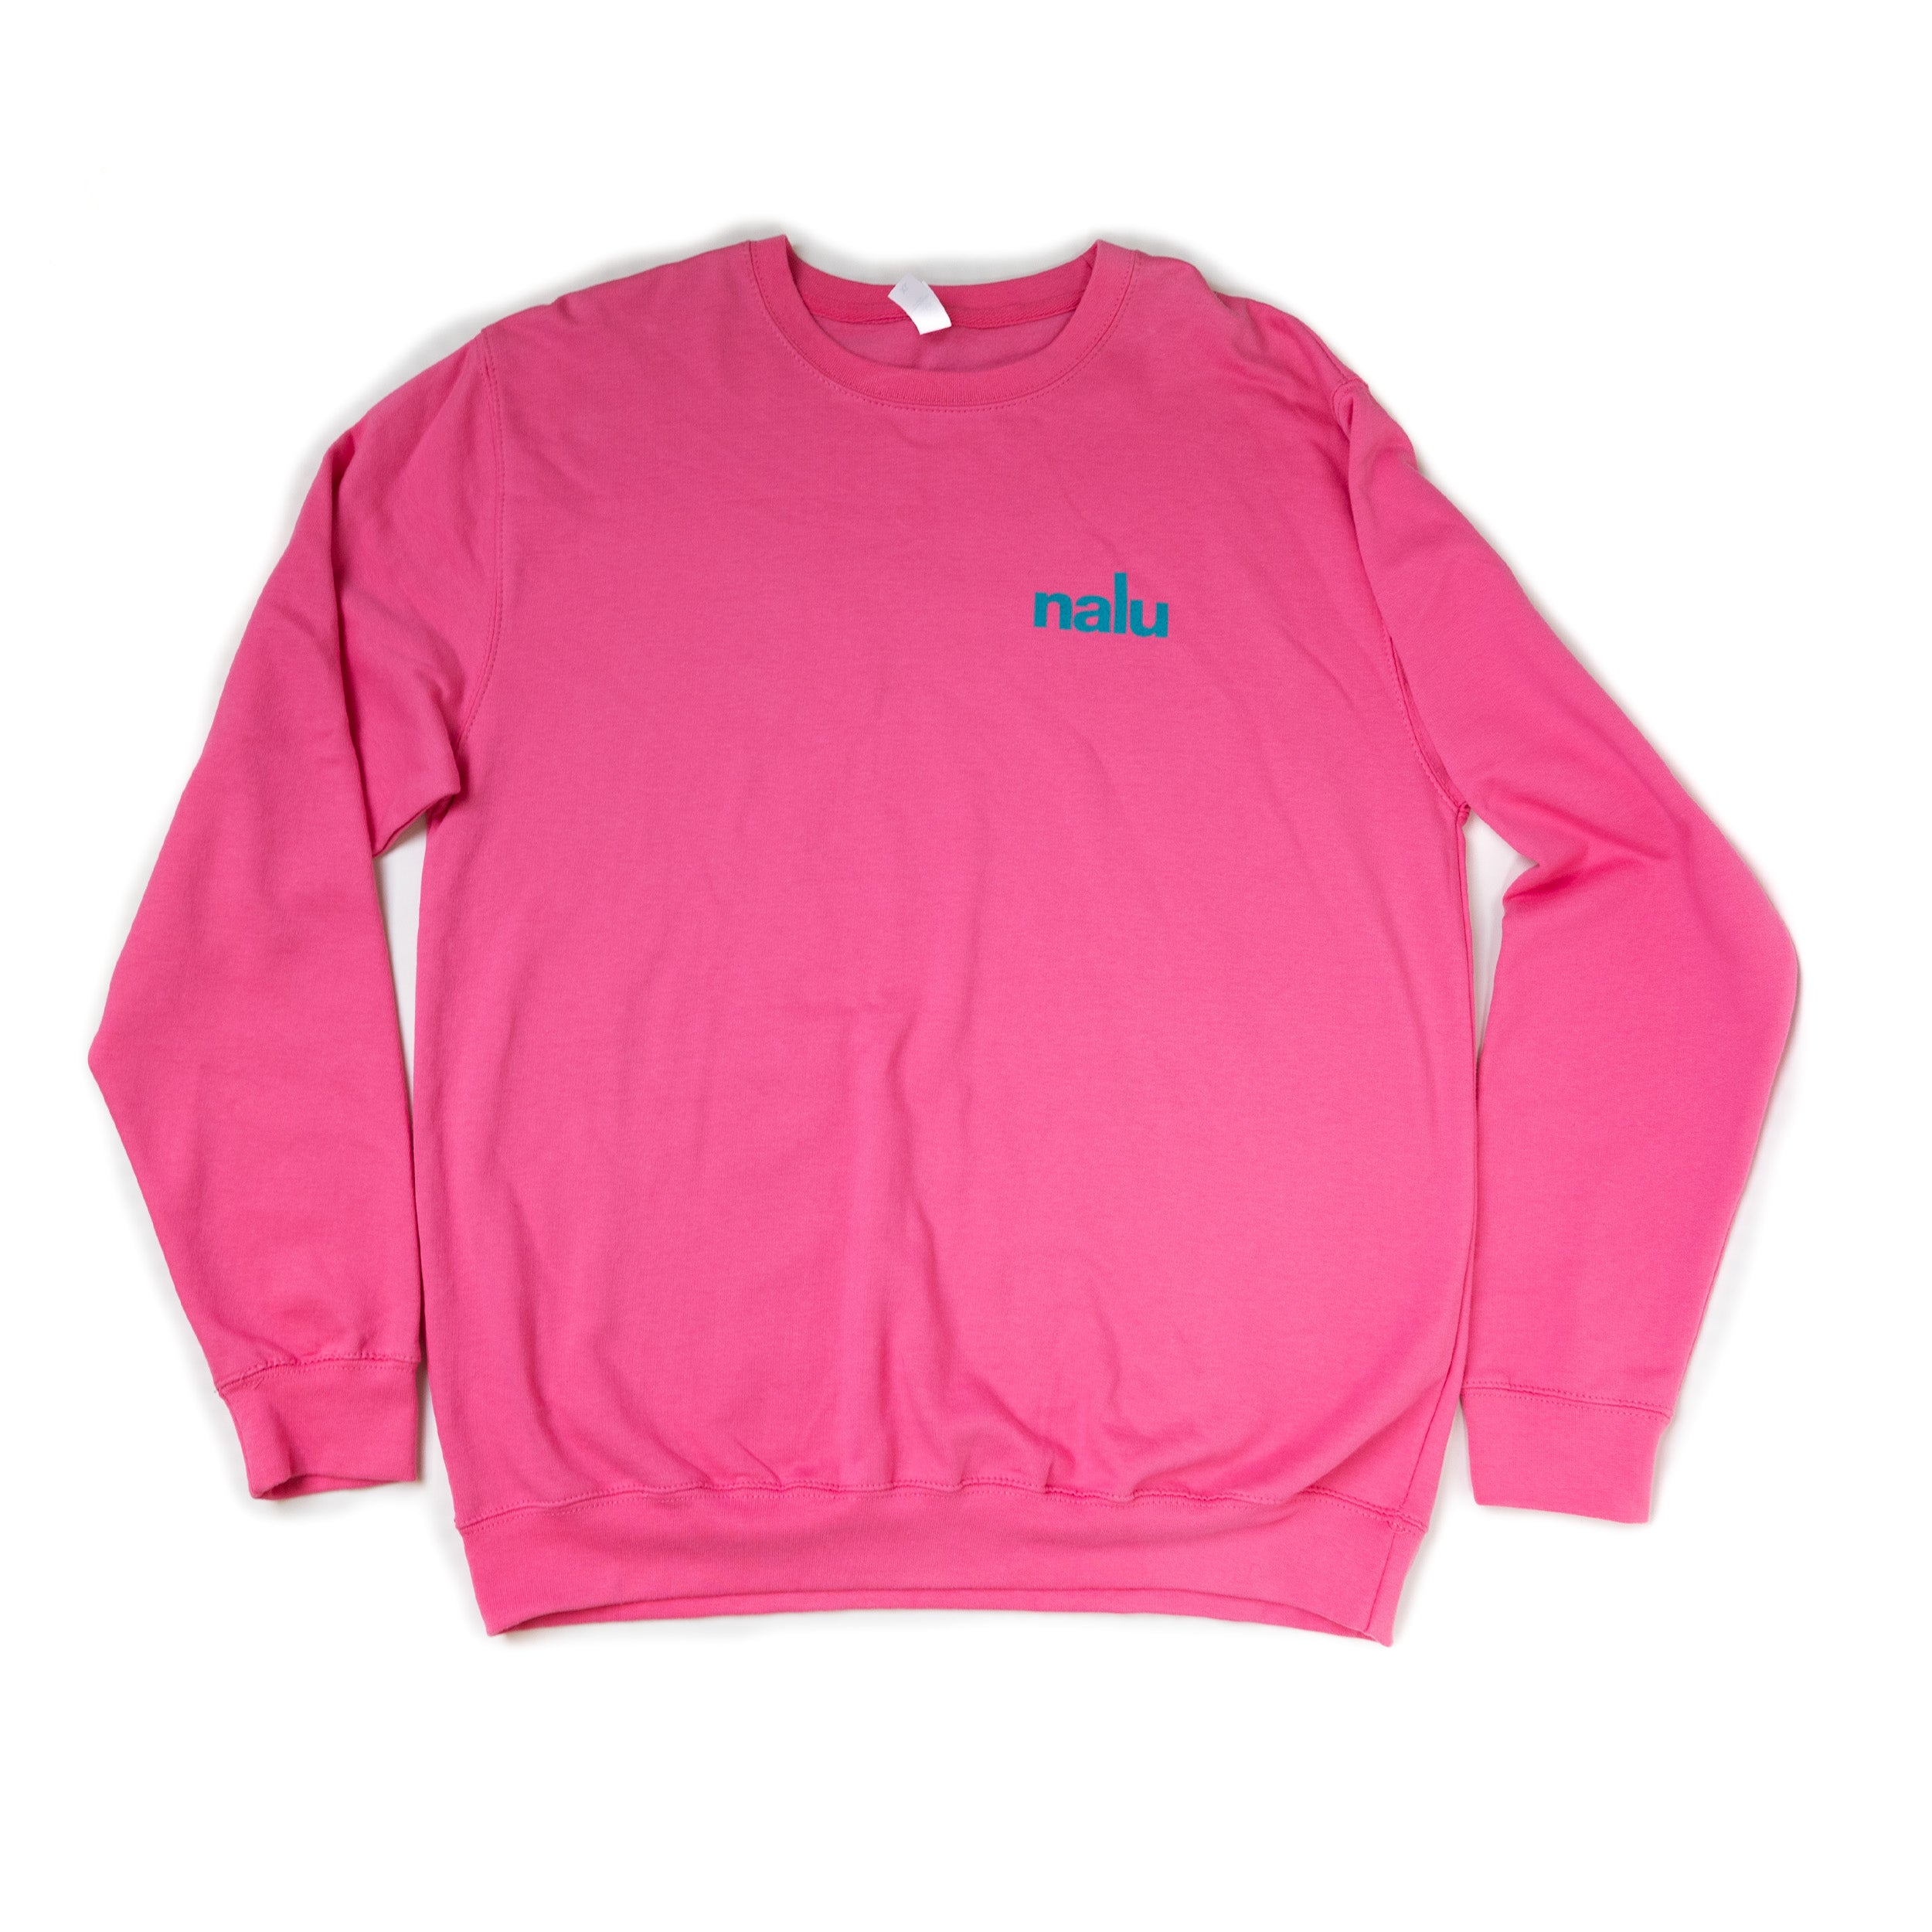 Nalu Sweatshirt Bright Pink